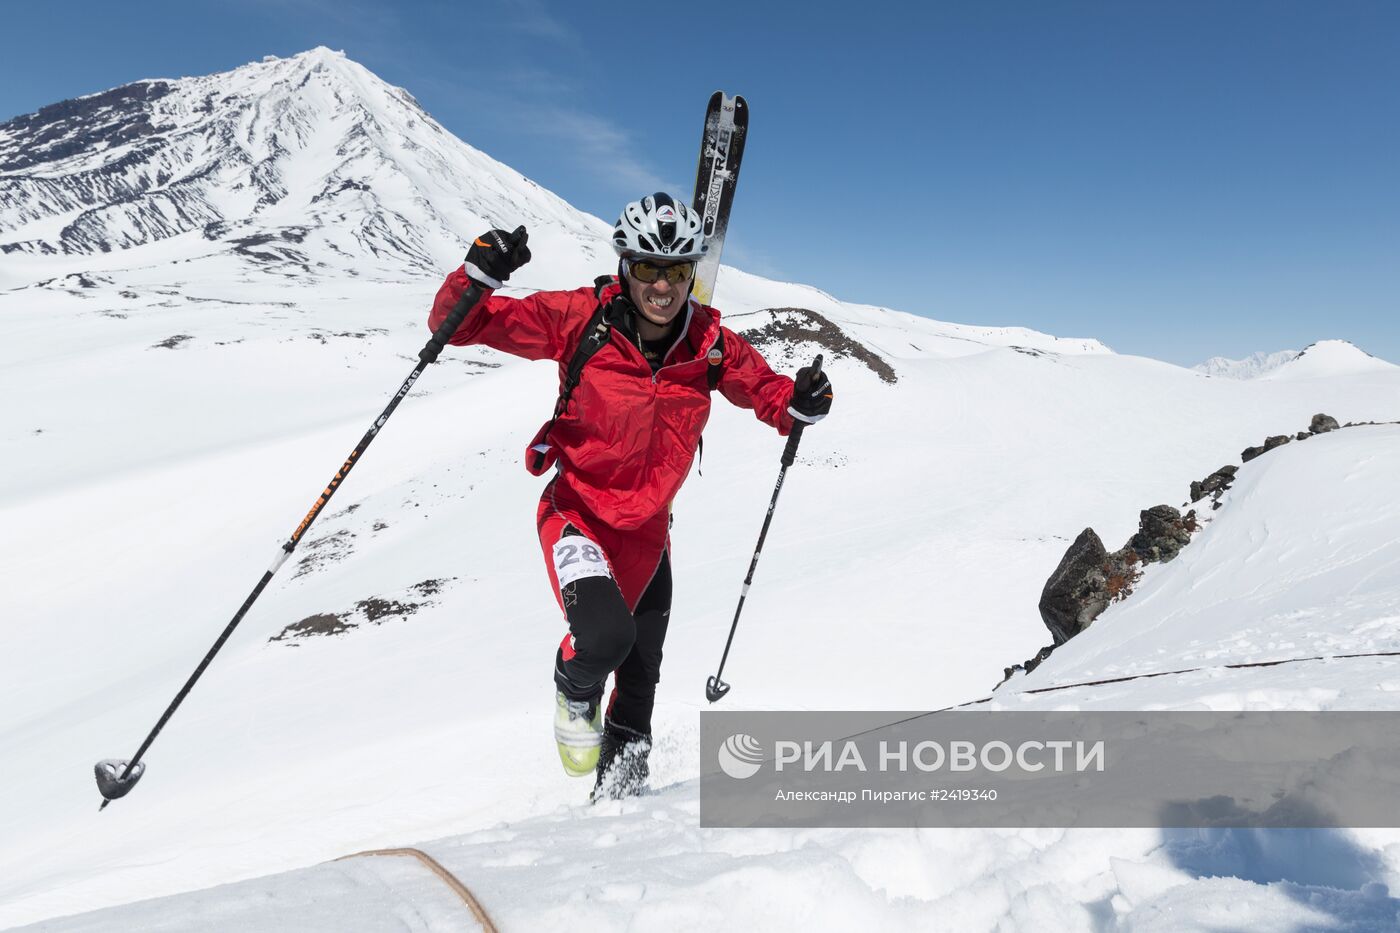 Международные соревнования ISMF series "Kamchatka Race — 2014" по ски-альпинизму